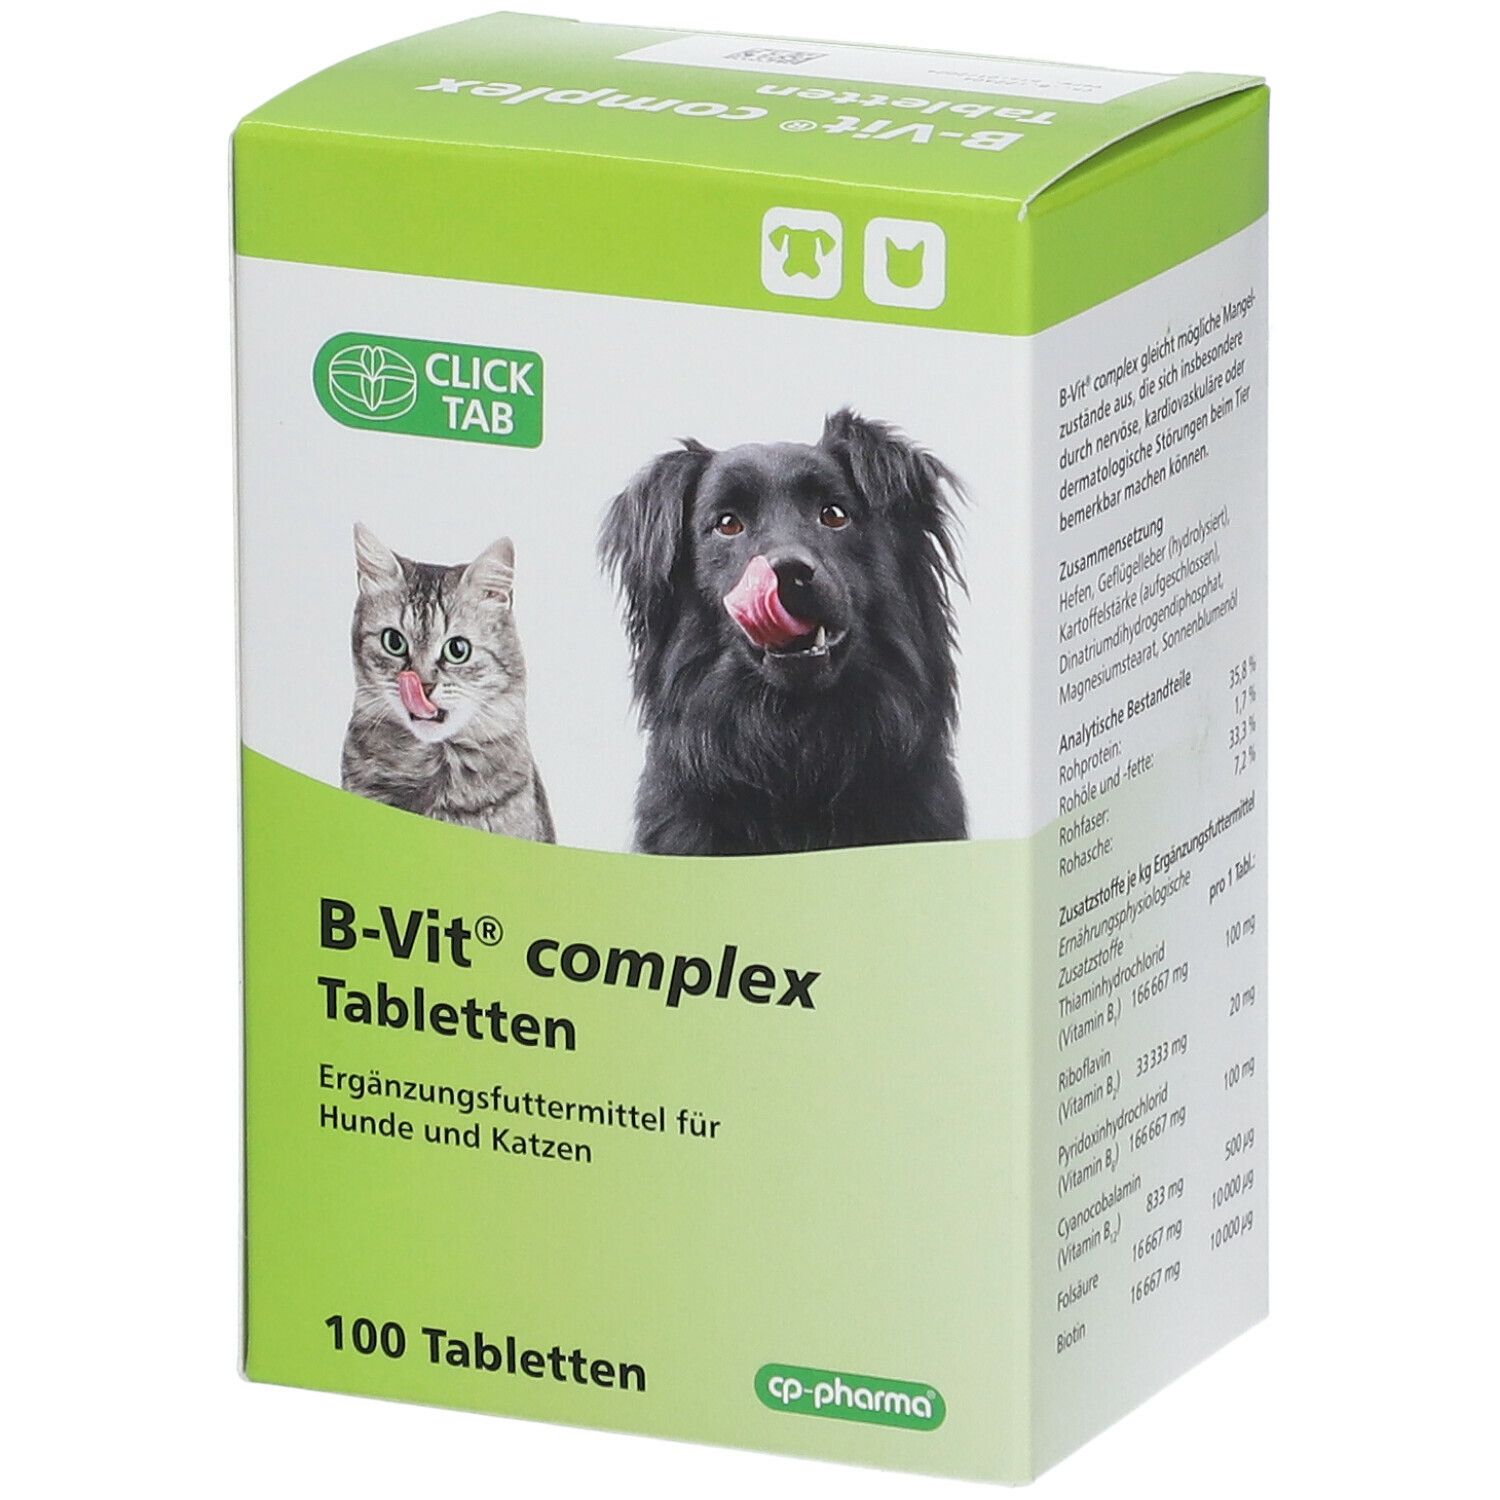 B-Vit® complex